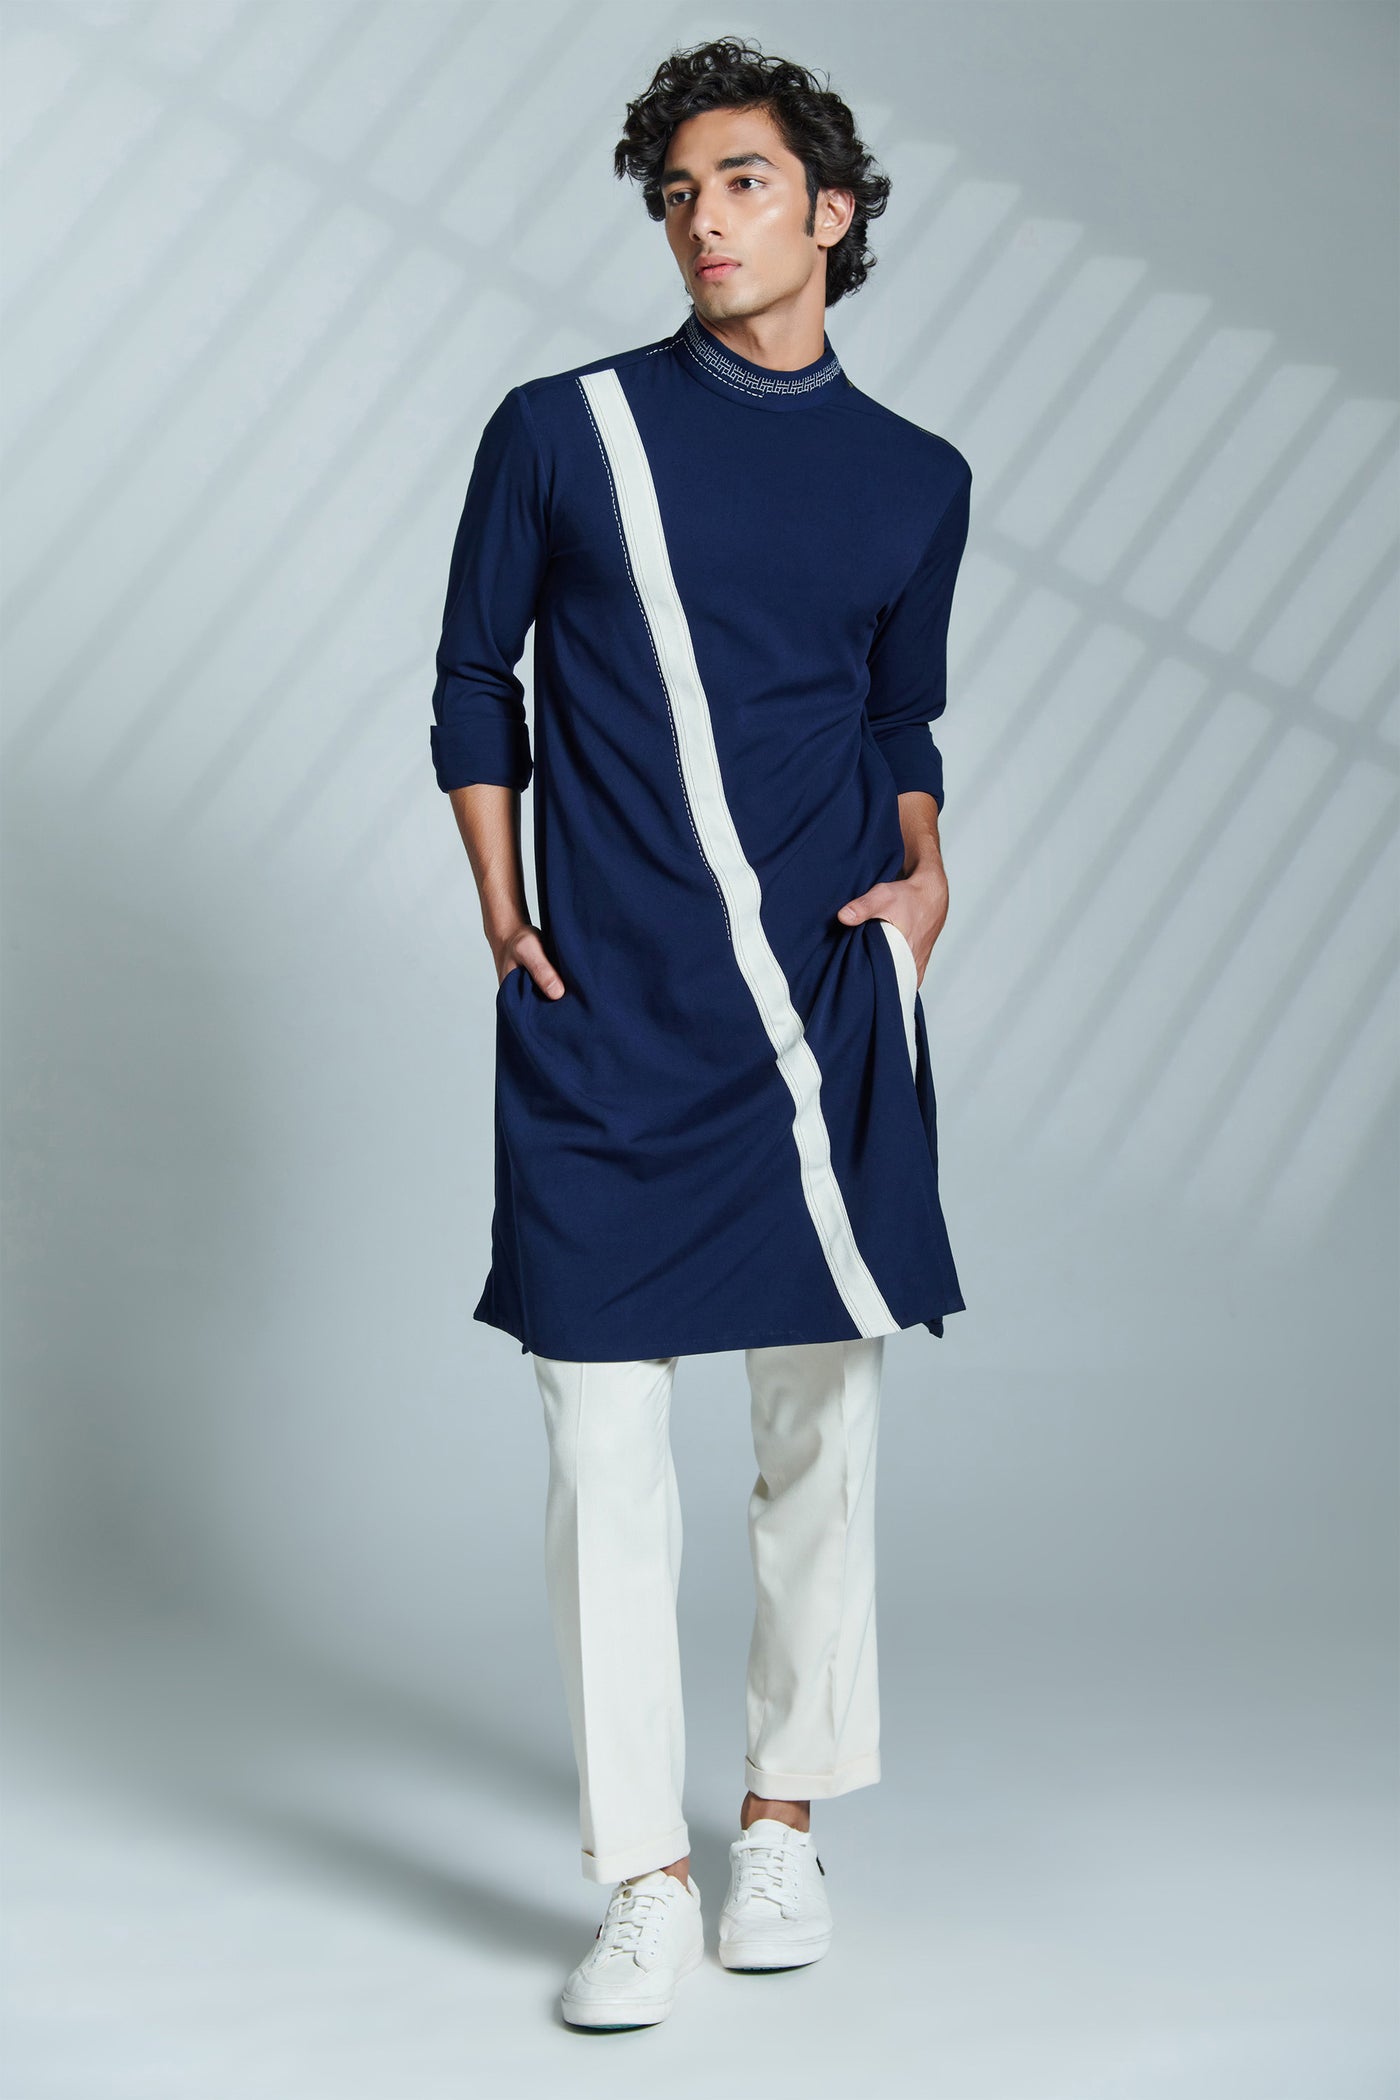 shantanu & nikhil menswear Navy kurta With Diagonal Stripe Detailing indian designer wear online shopping melange singapore